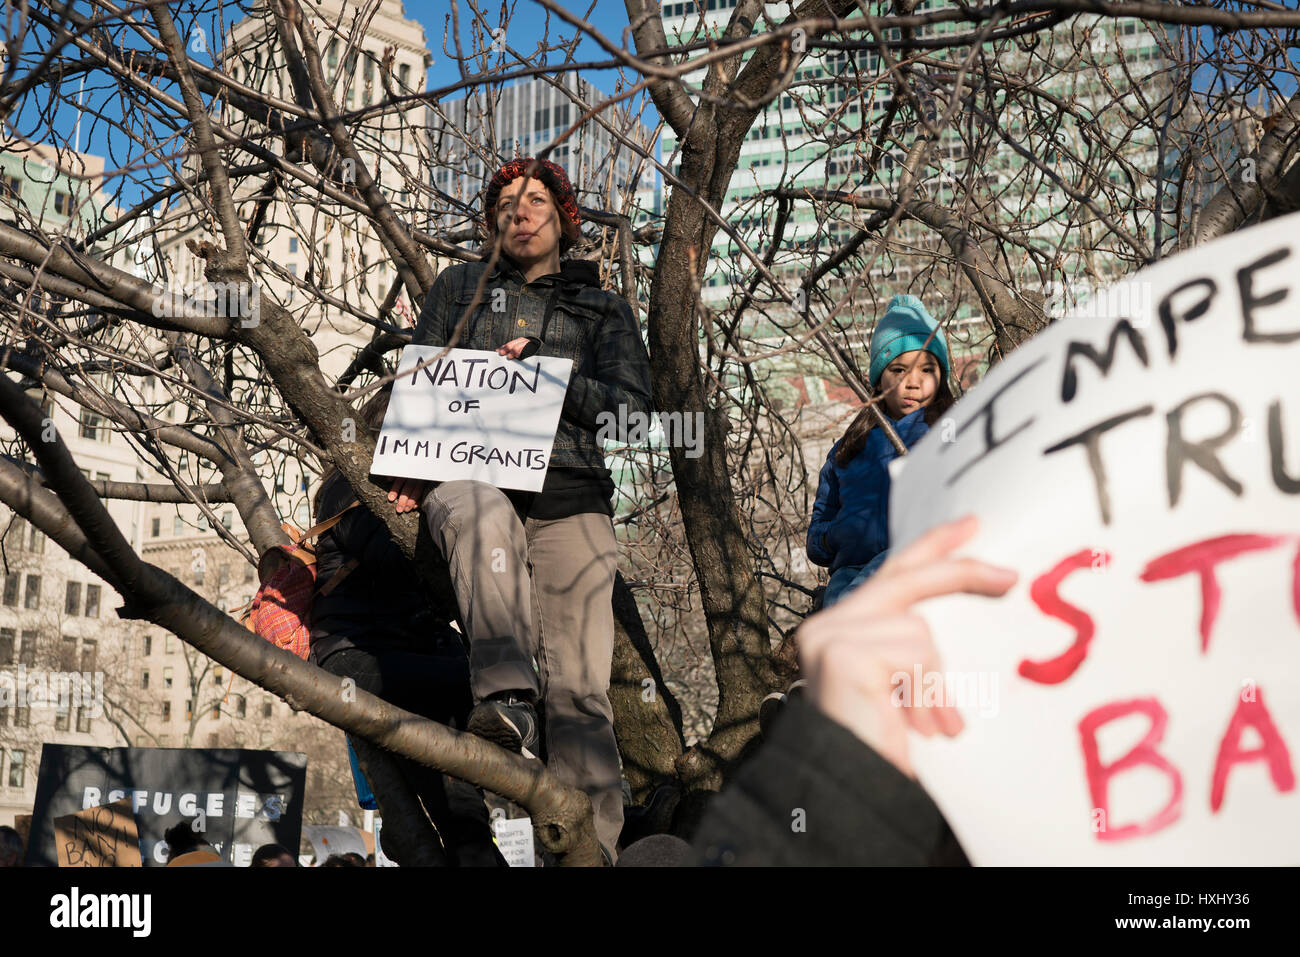 Manifestant grimper des arbres pour une meilleure vue des orateurs au cours d'un rassemblement contre le président musulman du Trump interdiction de voyager dans Battery Park, New York. Banque D'Images